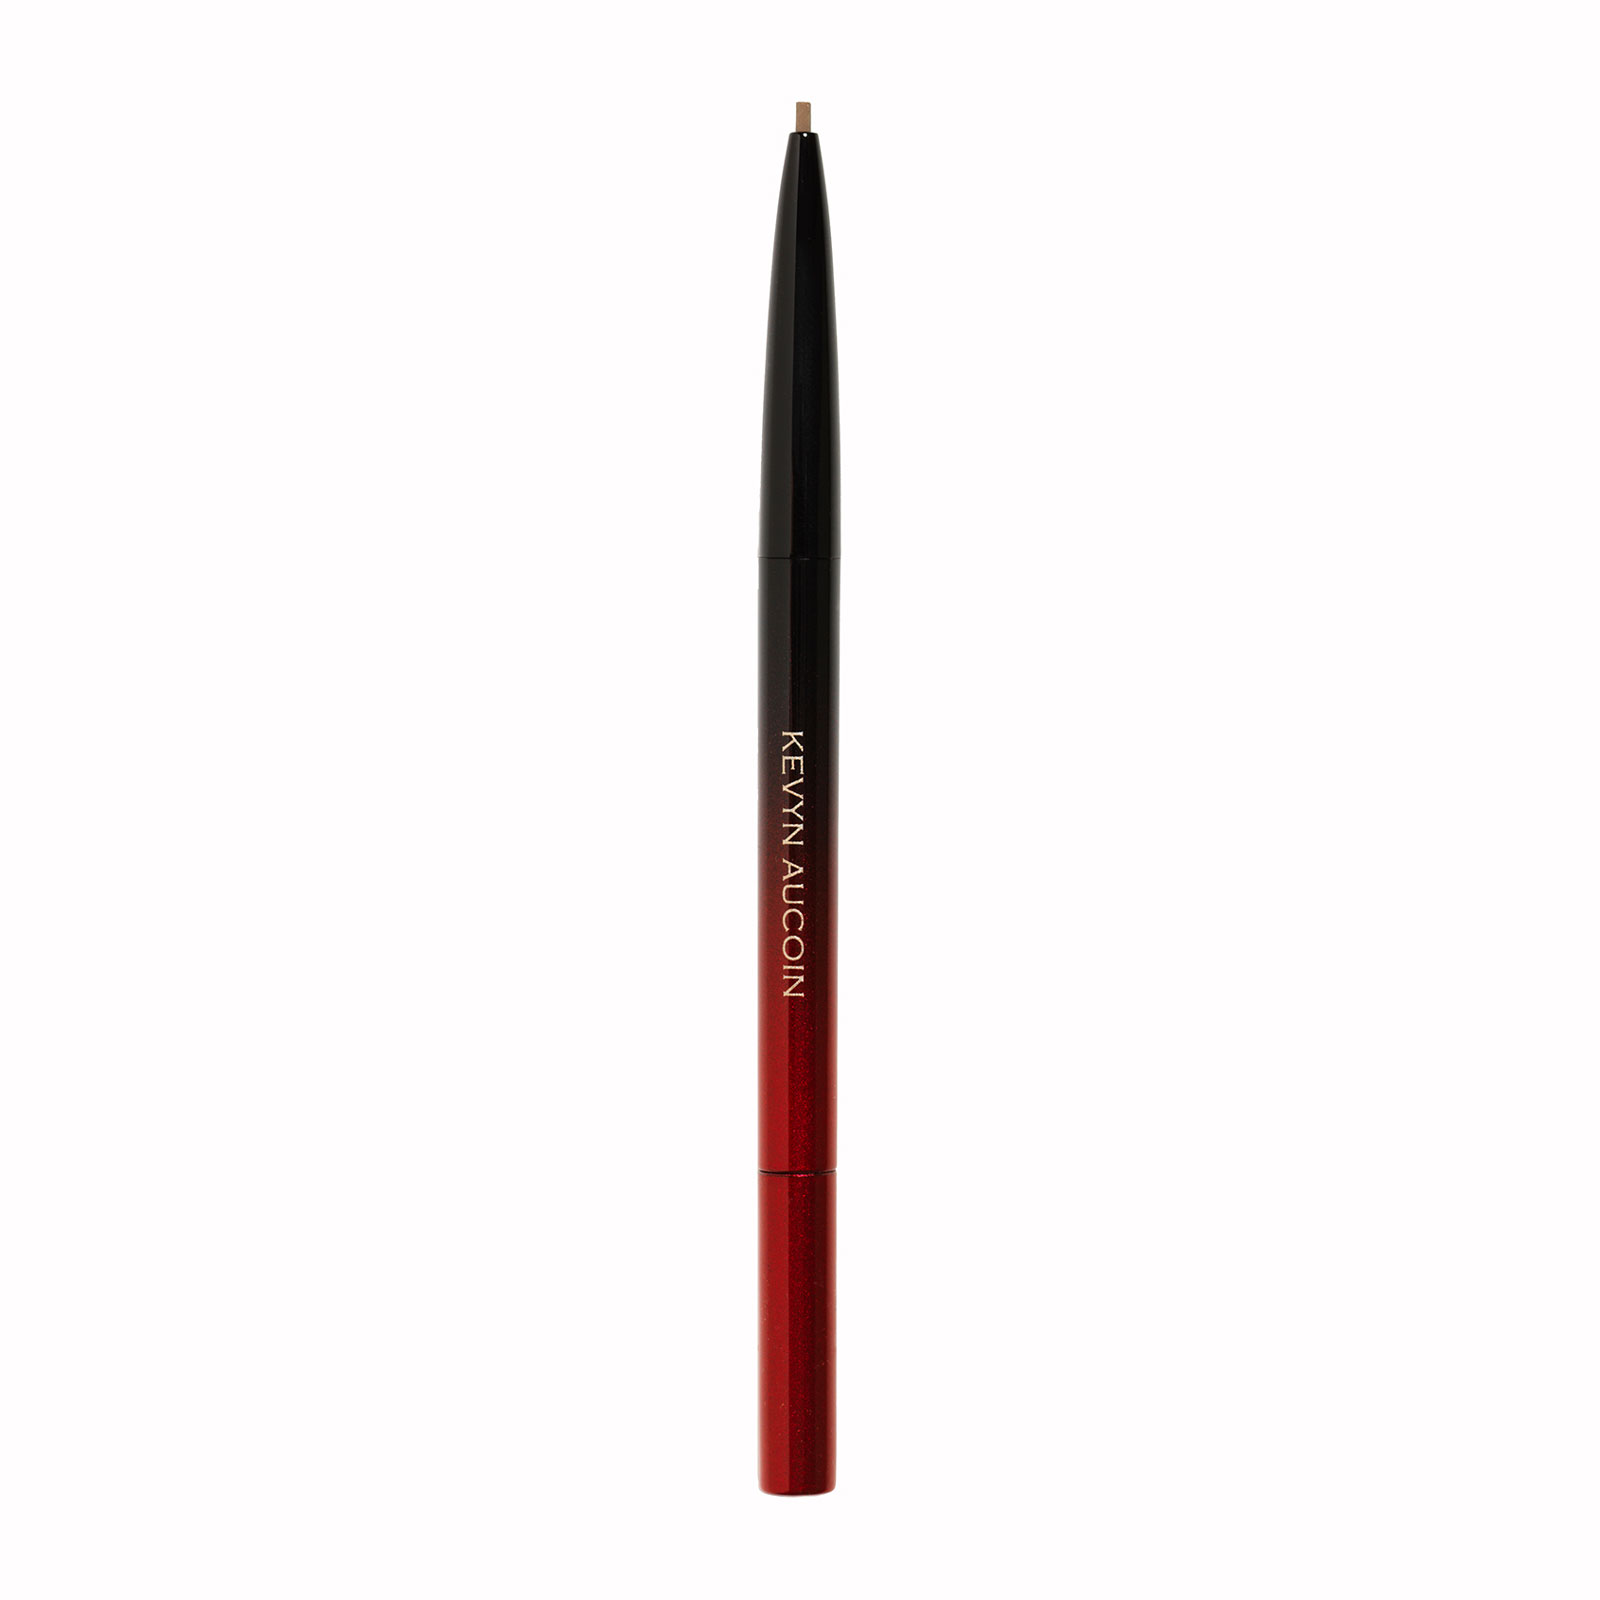 Kevyn Aucoin The Precision Brow Pencil 0.1G Ash Blonde